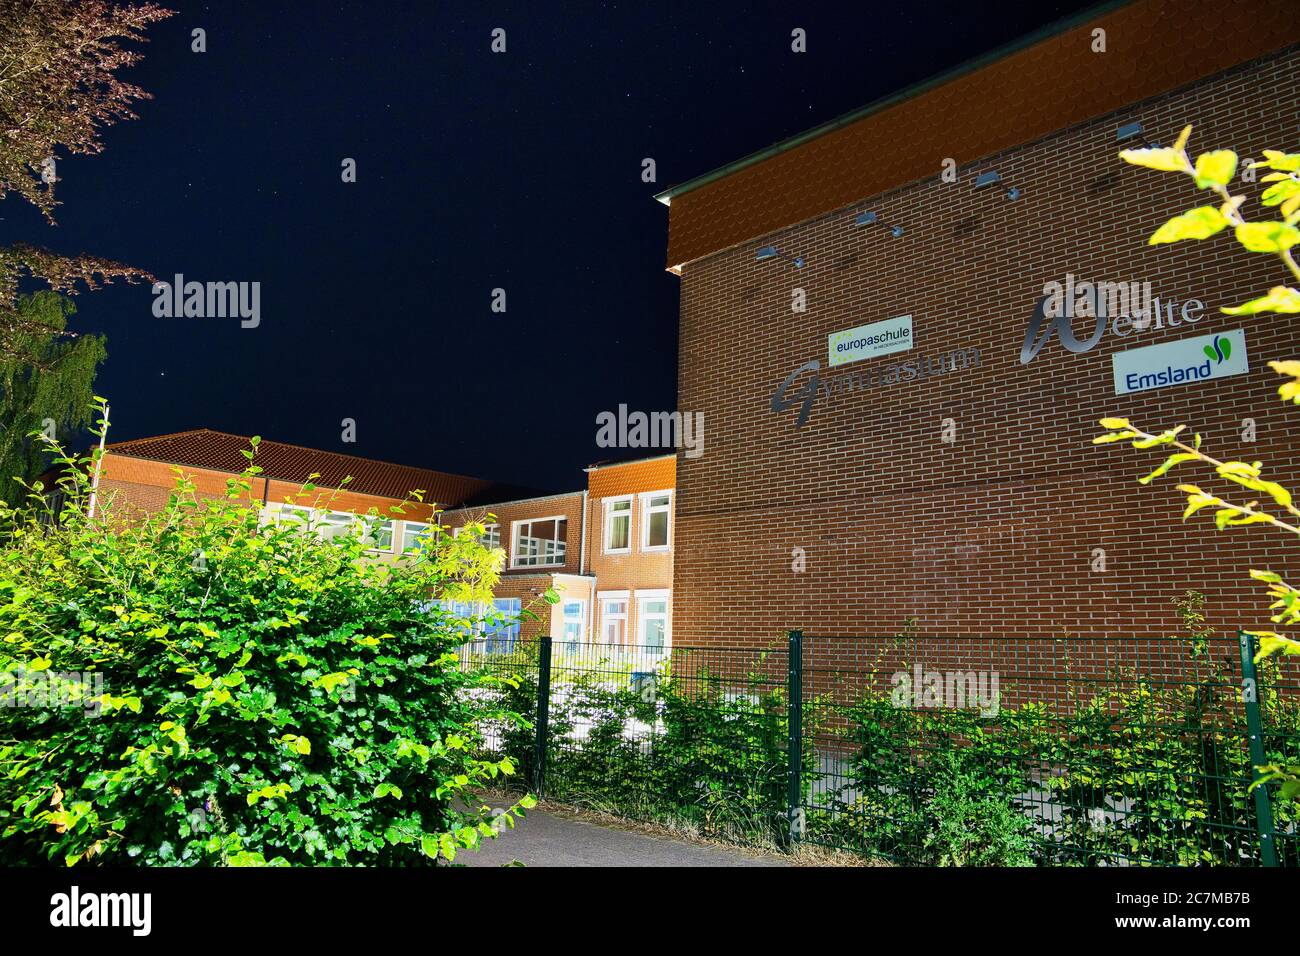 Nachtaufnahme der Albert-Trautmann-Schule, Oberschule in Werlte. Komet über dem Schulgebäude. Kein Unterricht wegen Corona. Stock Photo